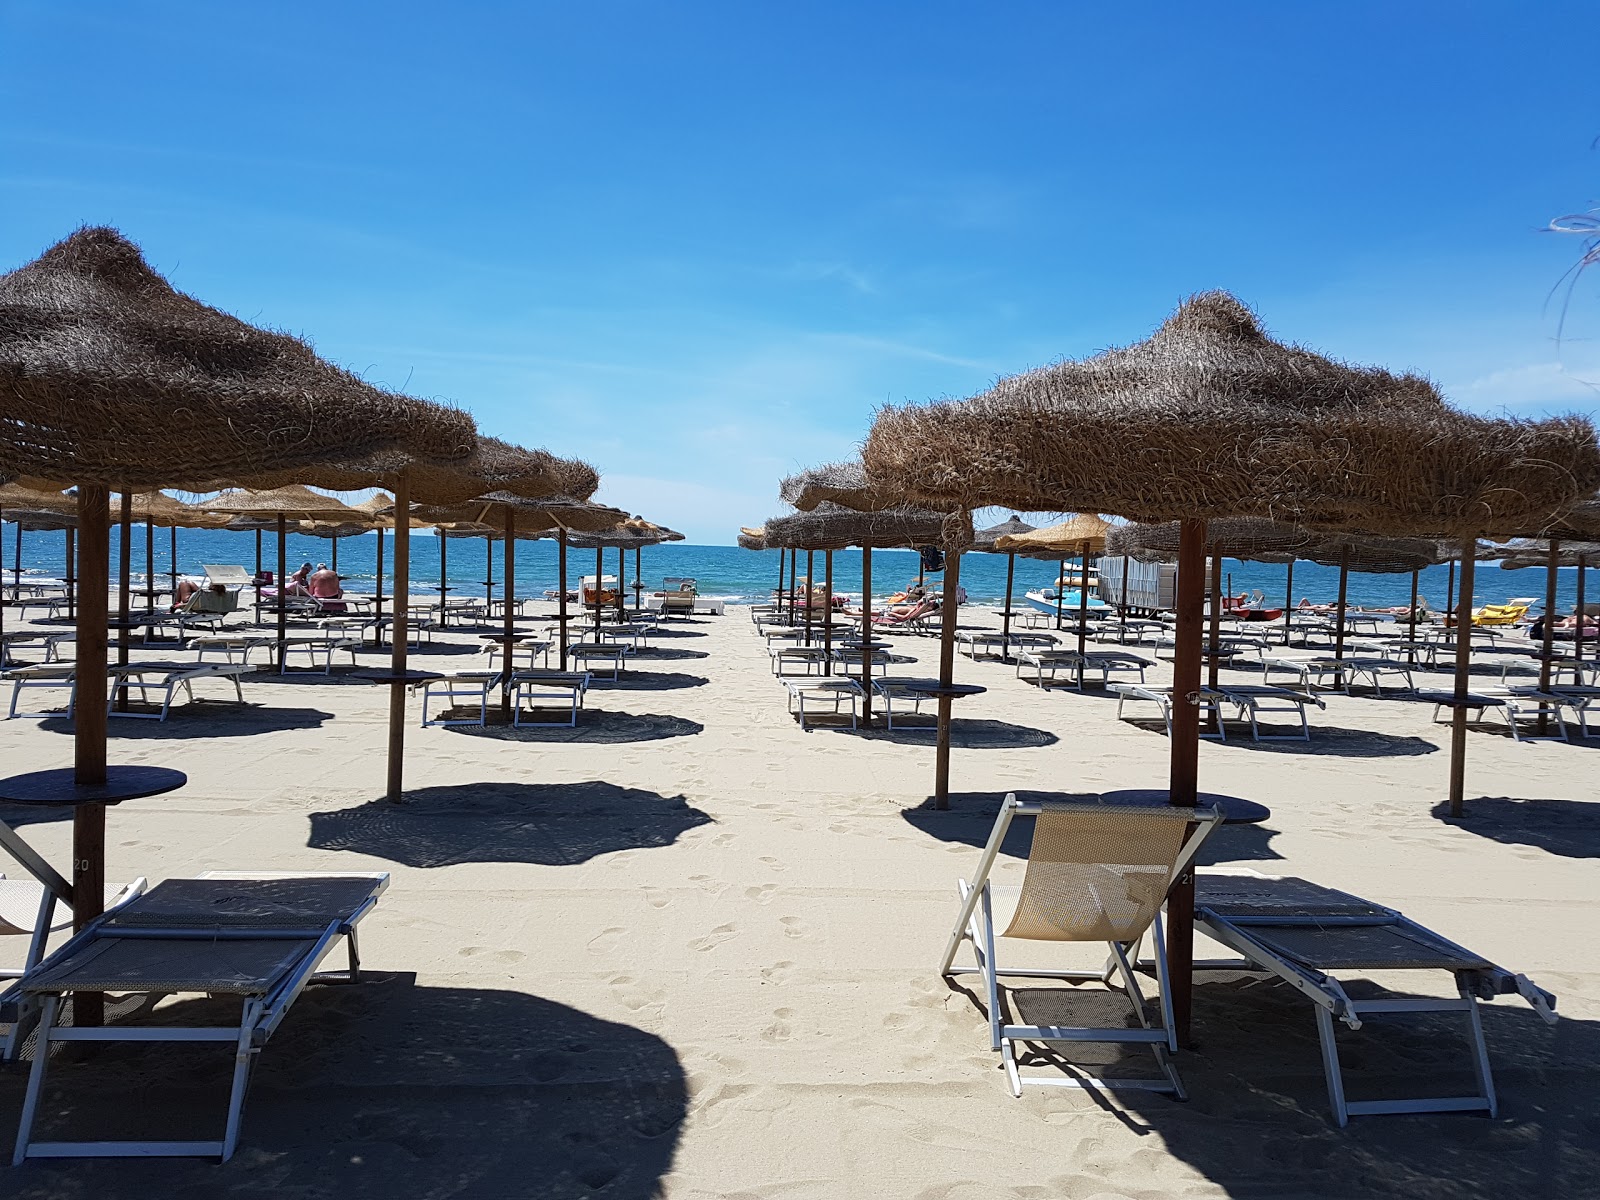 Foto de Spiaggia Libera Tirrenia - lugar popular entre los conocedores del relax